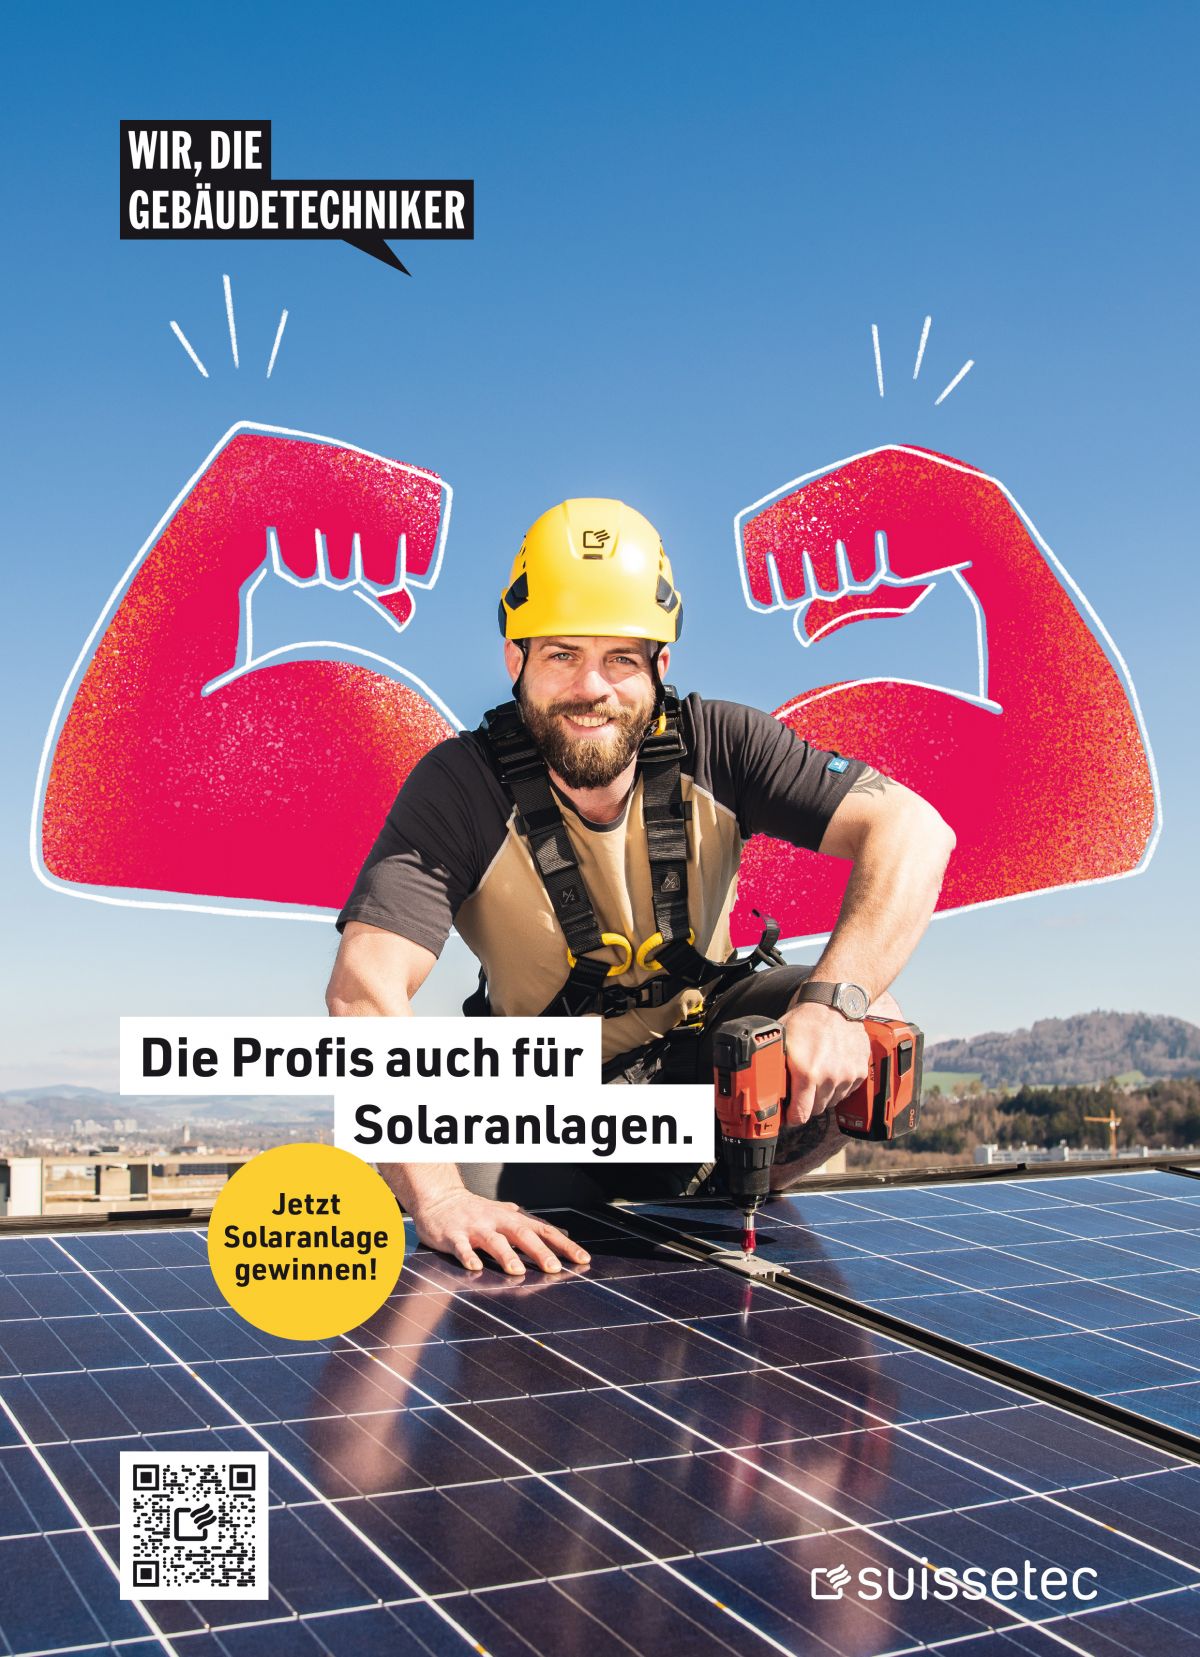 Solaranlage im Wert von 25'000 CHF gewinnen